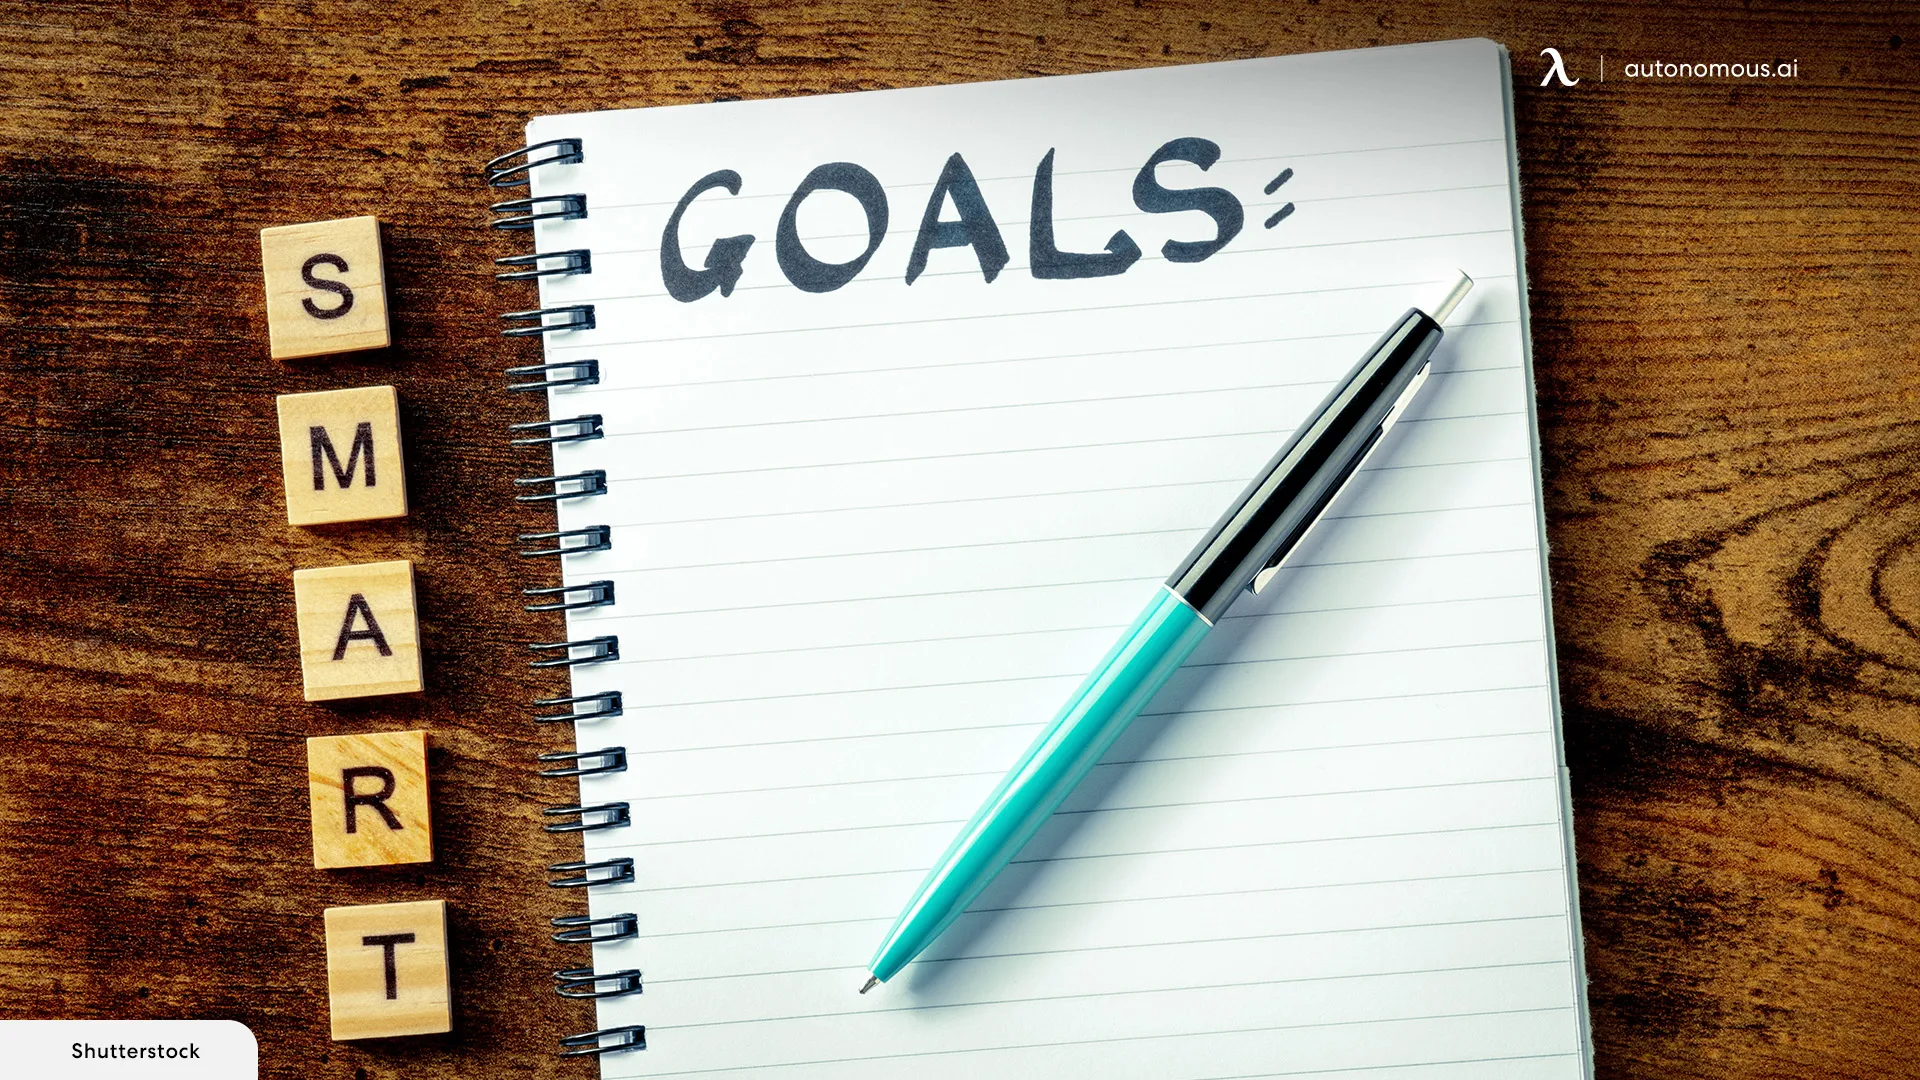 Set Achievable, Measurable Goals